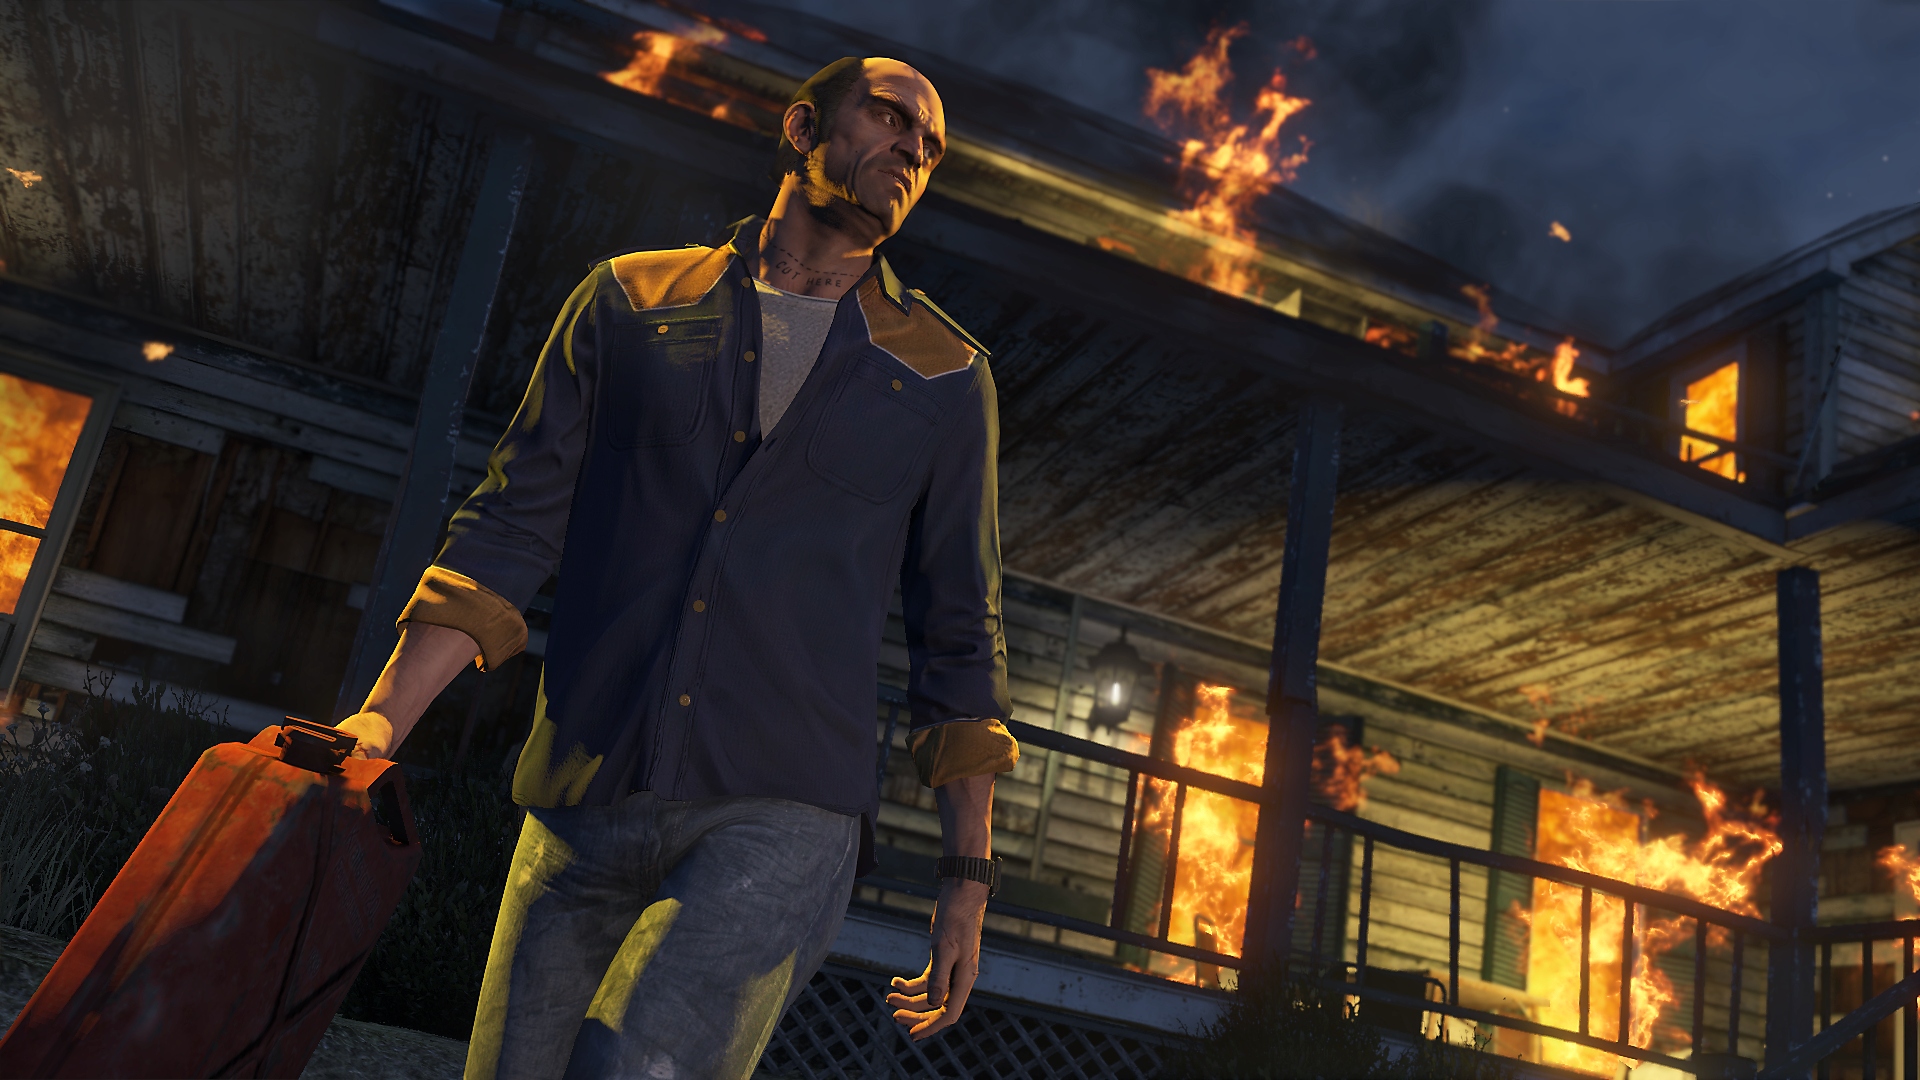 Grand Theft Auto V - Capture d'écran du personnage Trevor qui s'éloigne d'un bâtiment en feu avec un jerrican en main